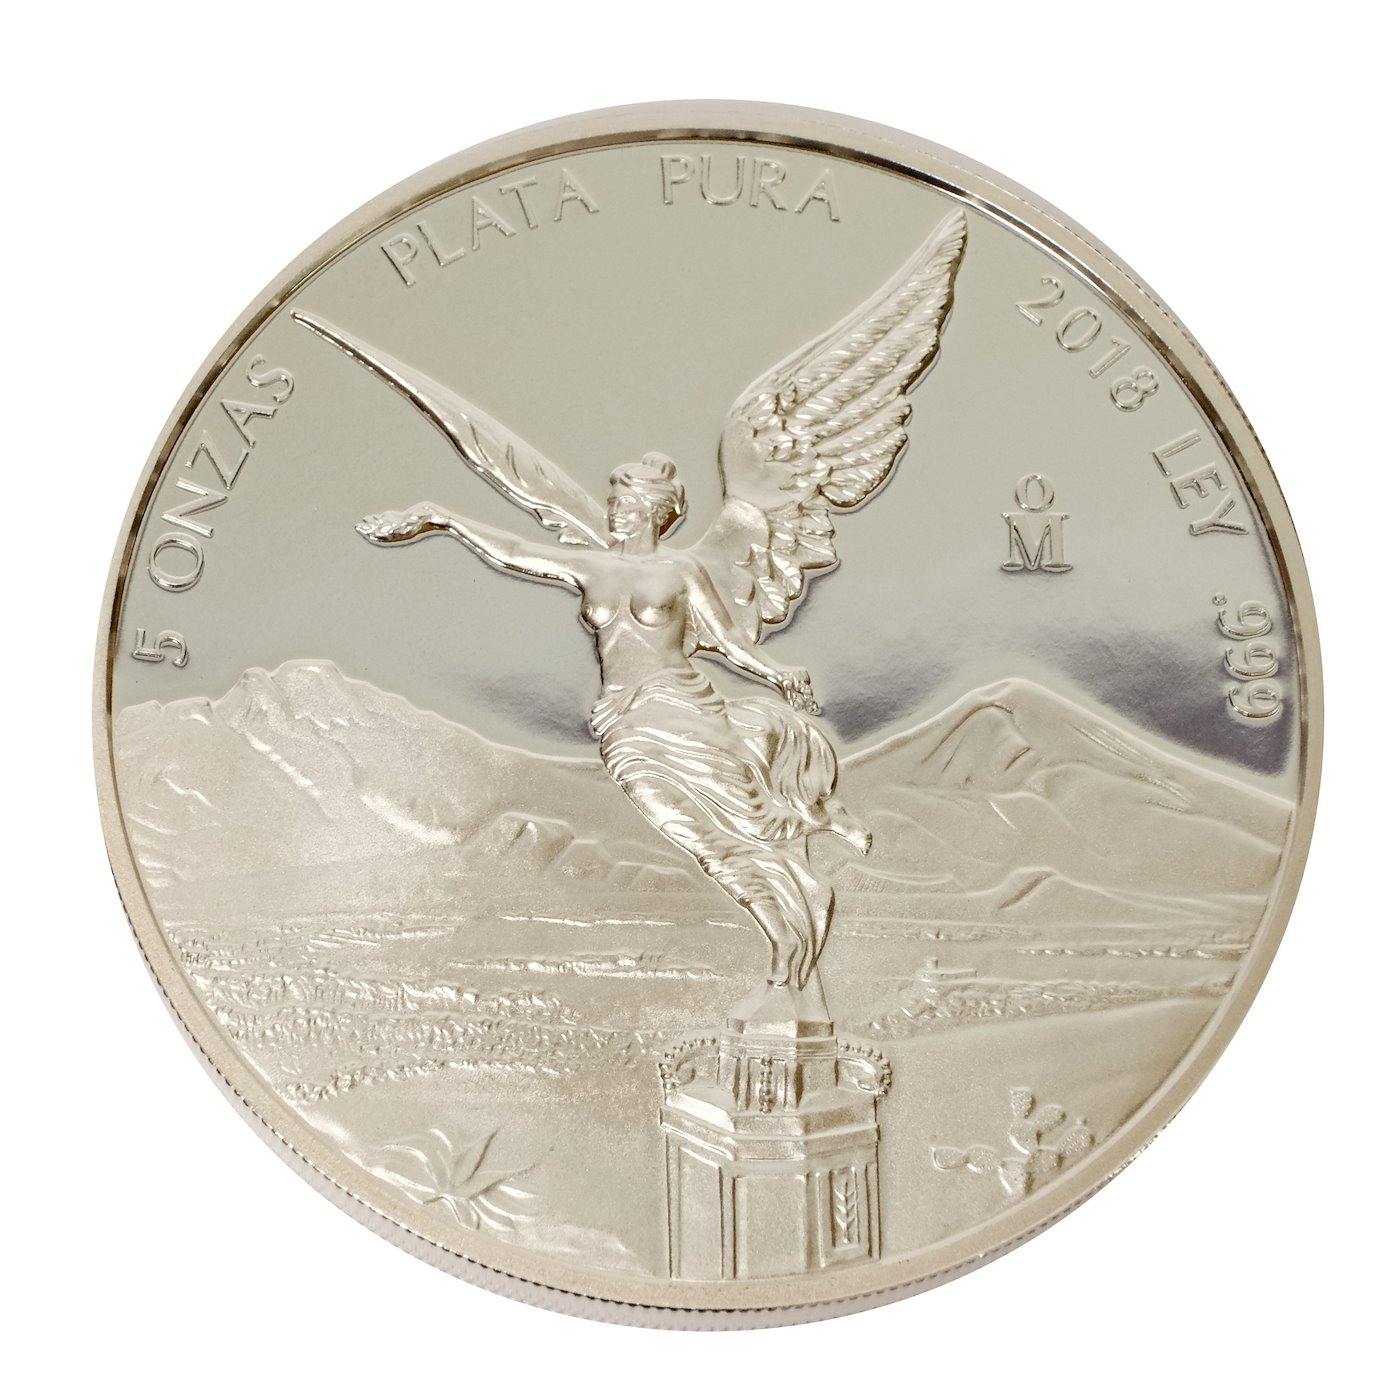 .. - Stříbrná 5 uncová mince 2018 MEXICO, stříbro 999/1000 g, hmotnost hrubá 155,5 g